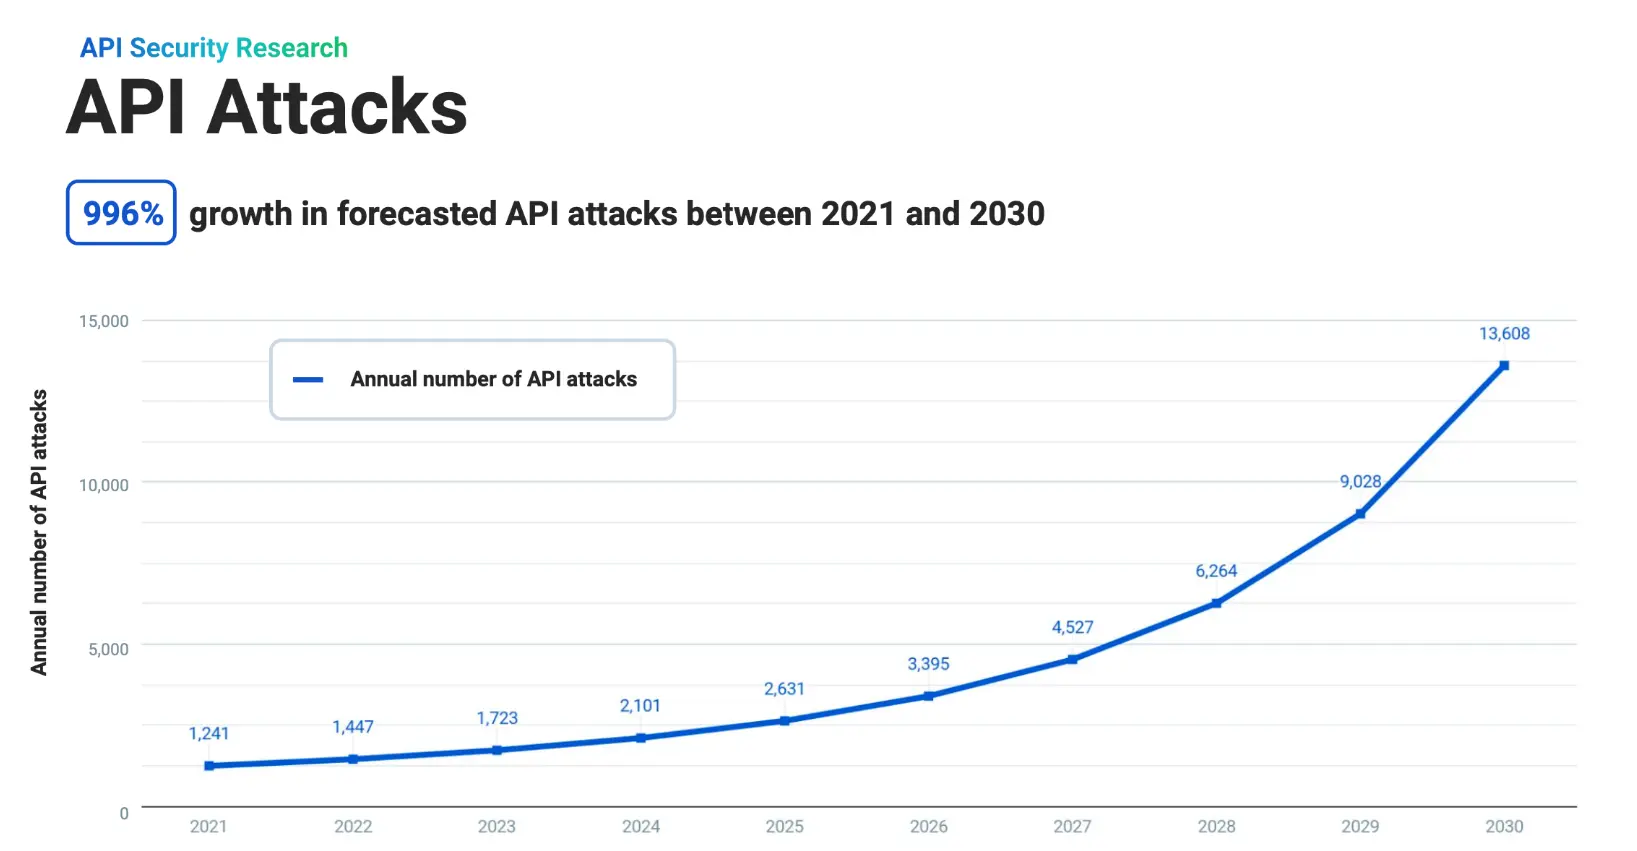 到 2030 年API 攻击预计将激增近 1000%